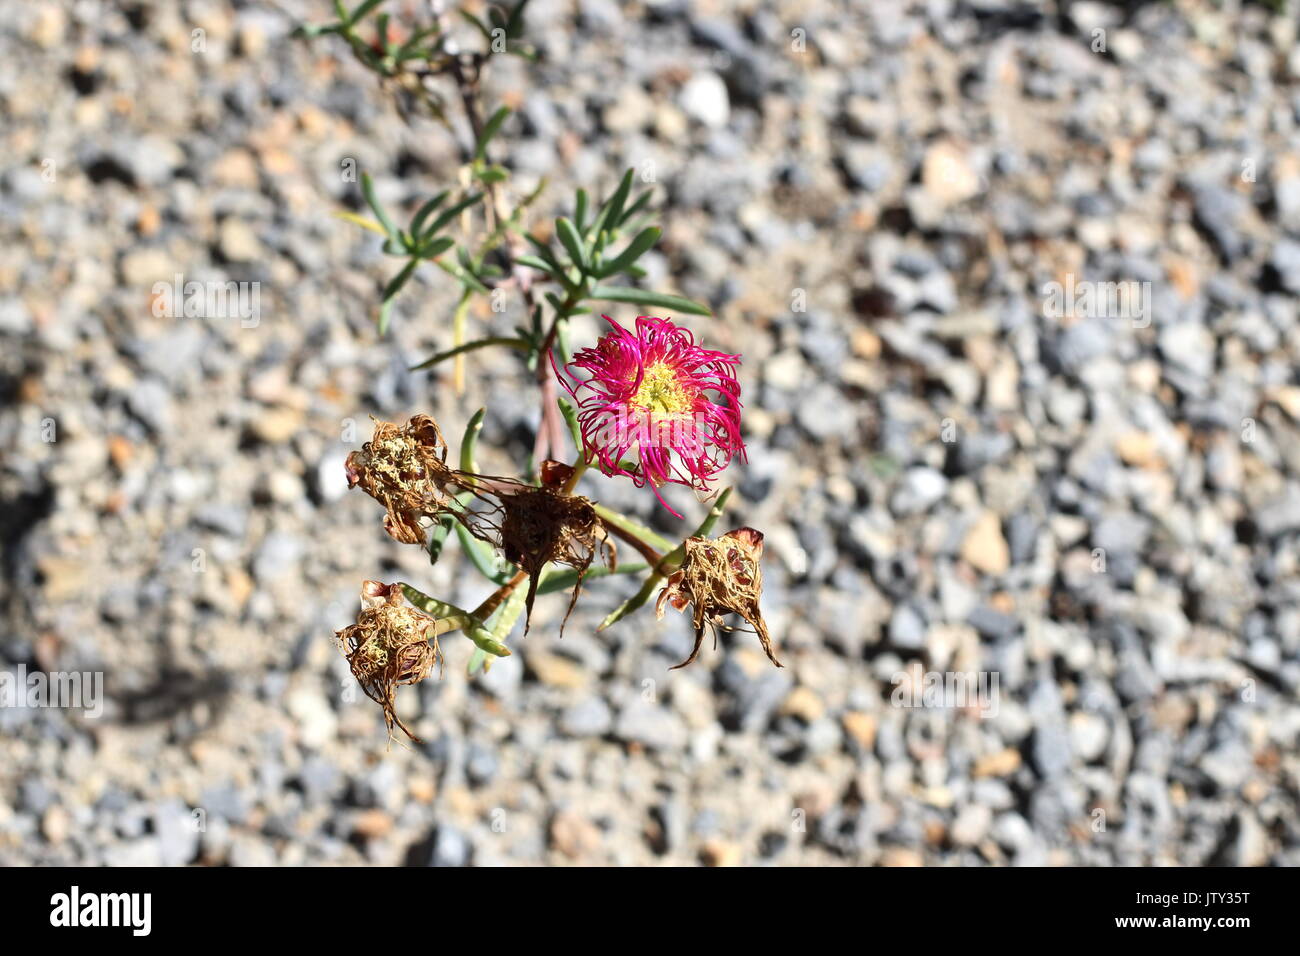 Cochon rose fleurs face ou mesembryanthemum , usine à glace, fleurs marguerites fleurs séchage livingstone Banque D'Images